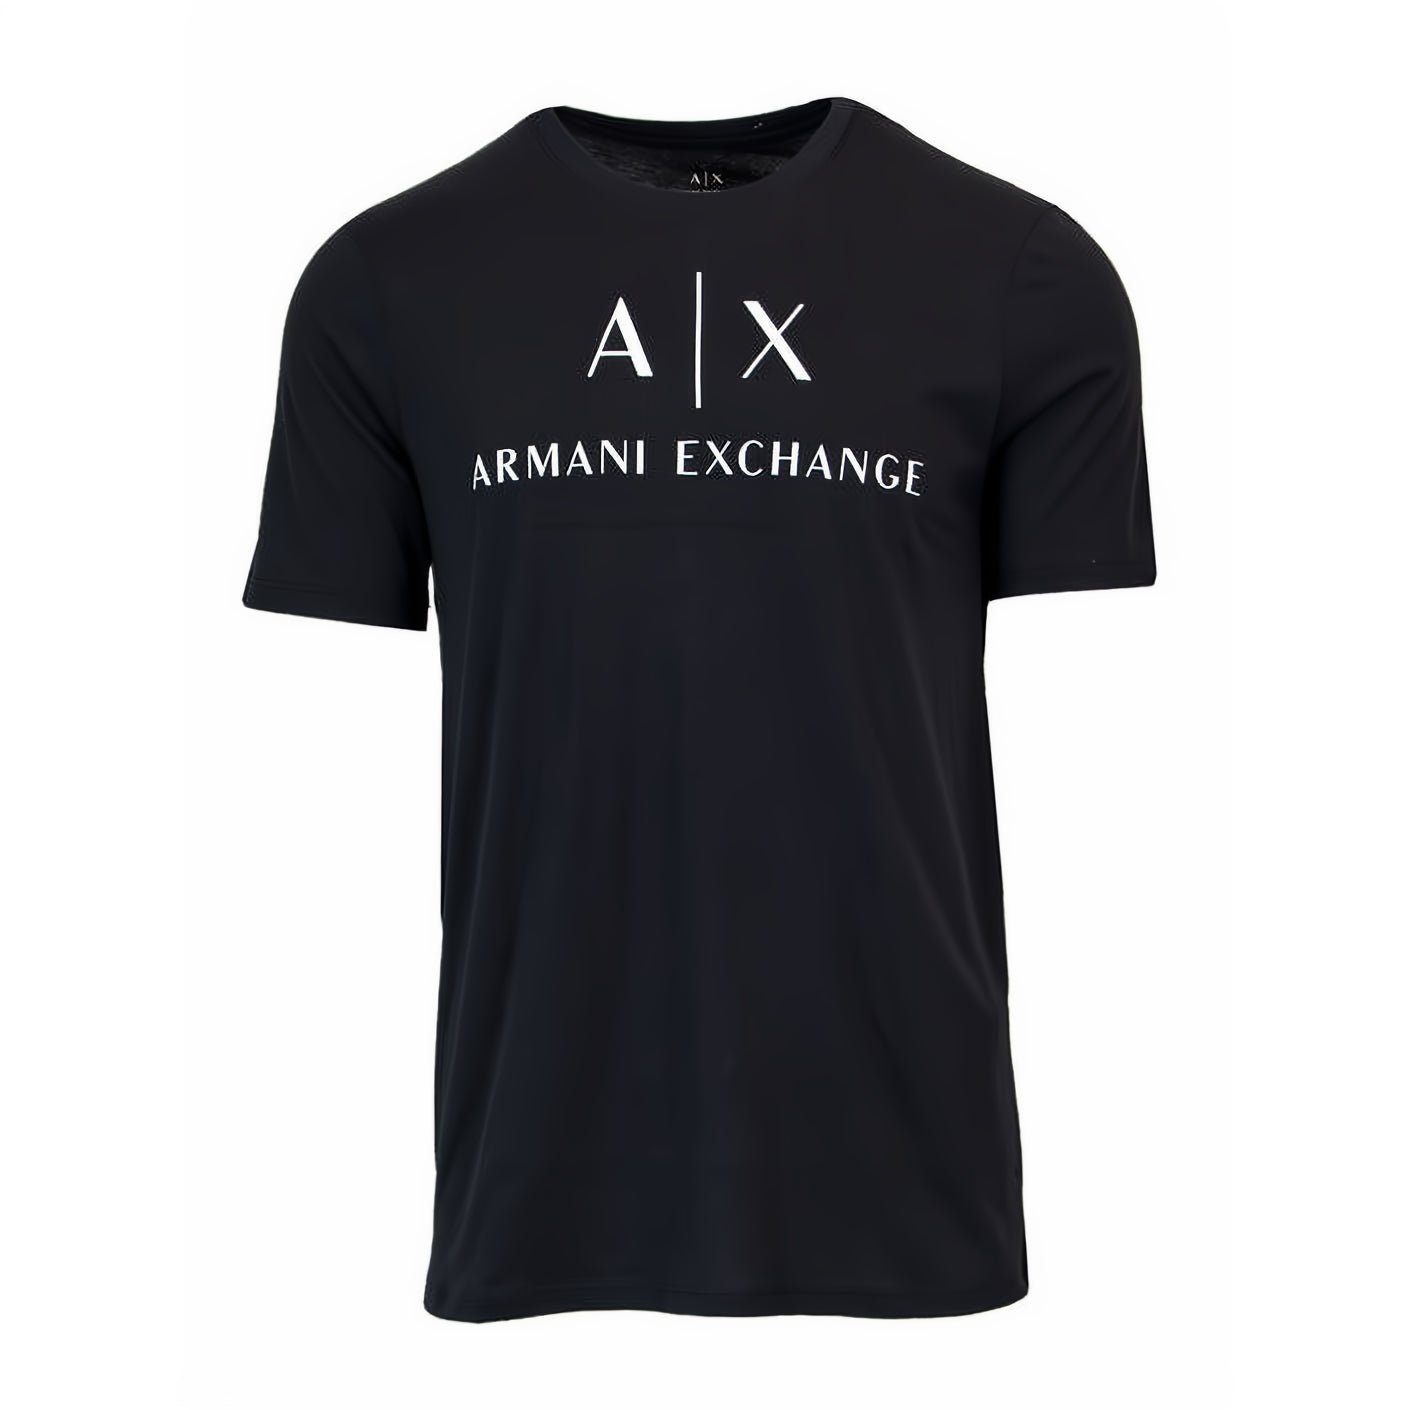 ARMANI EXCHANGE T-Shirt kurzarm, Rundhals, ein Must-Have für Ihre Kleidungskollektion! Schwarz